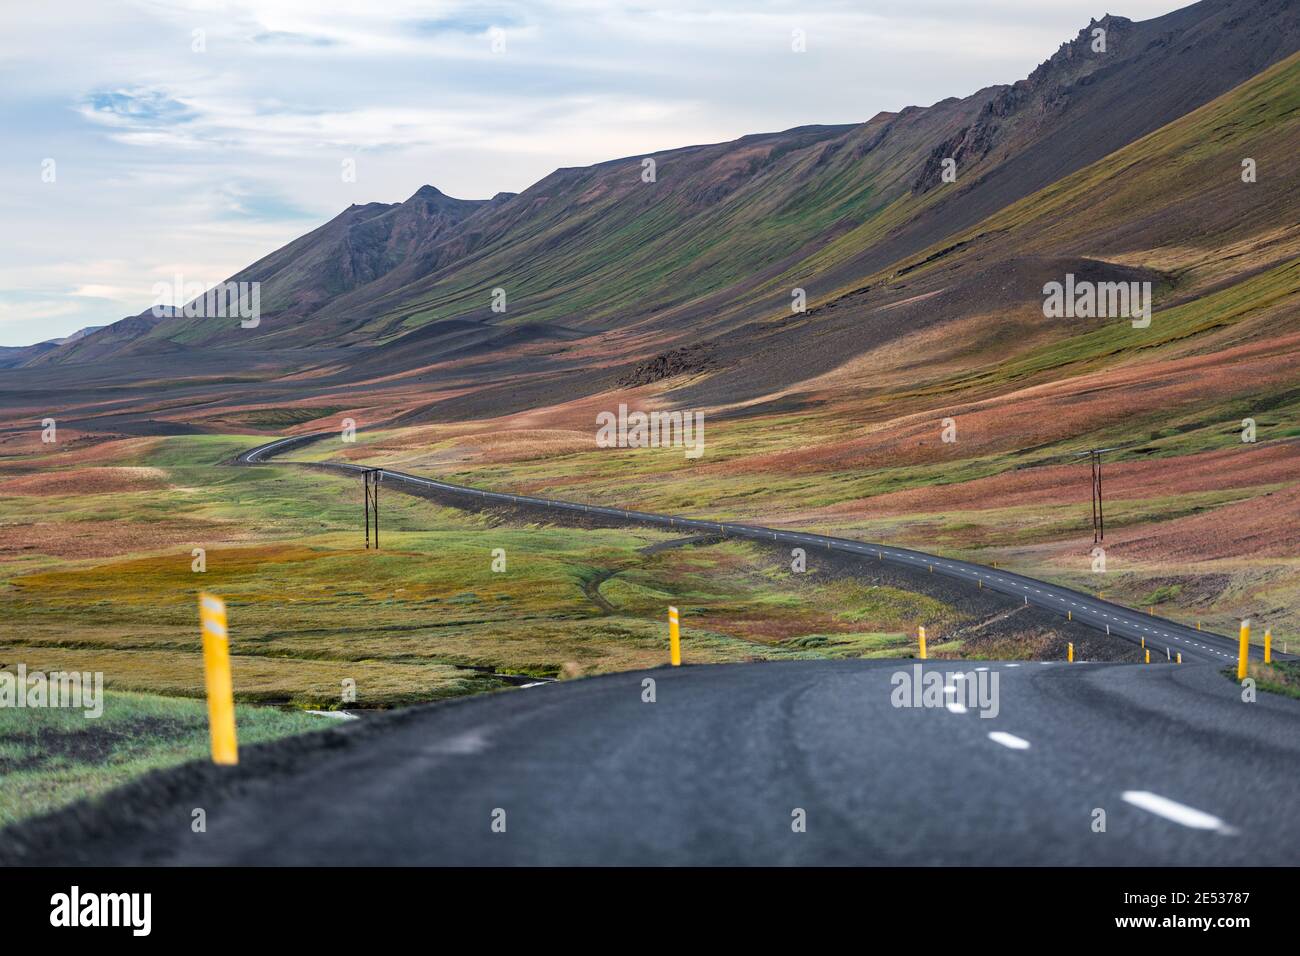 Paesaggio islandese con una strada che serpeggiante attraverso una colorata pendenza collina crestata e una pianura Foto Stock